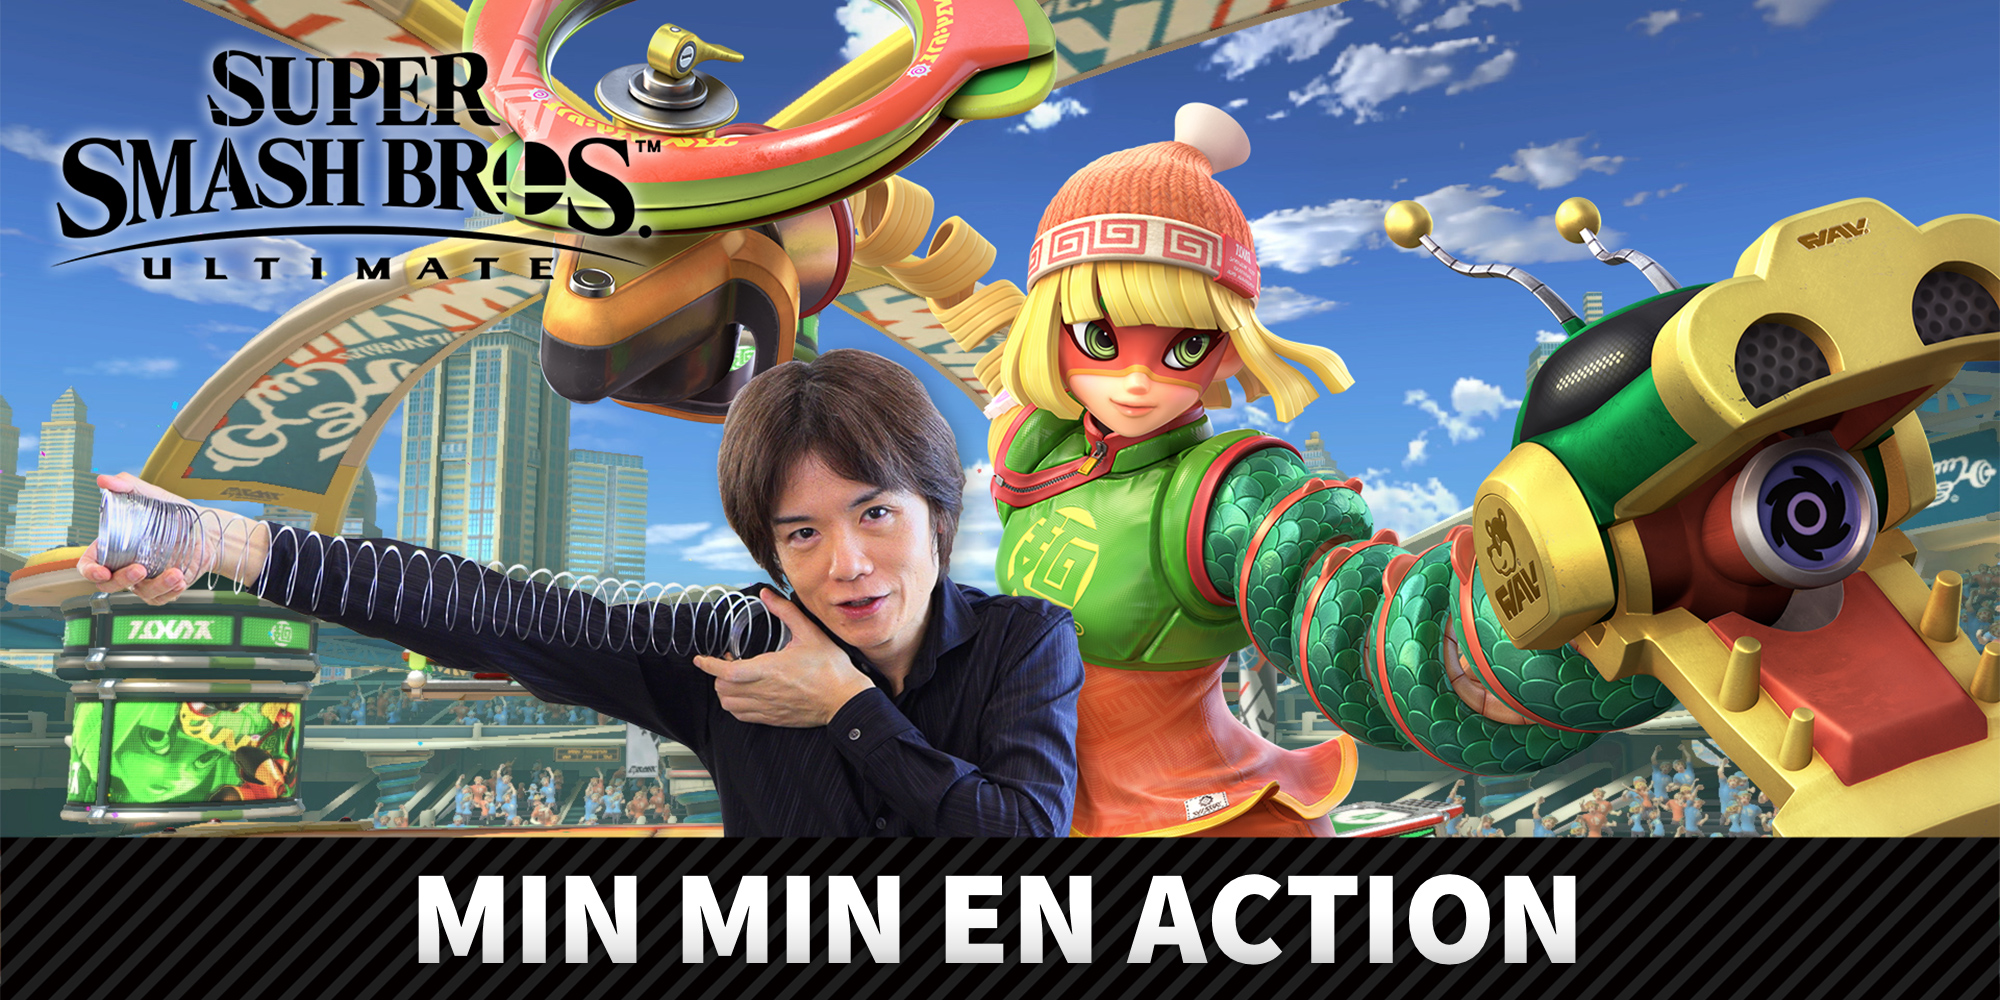 Min Min du jeu ARMS rejoint le casting de Super Smash Bros. Ultimate le 30 juin !